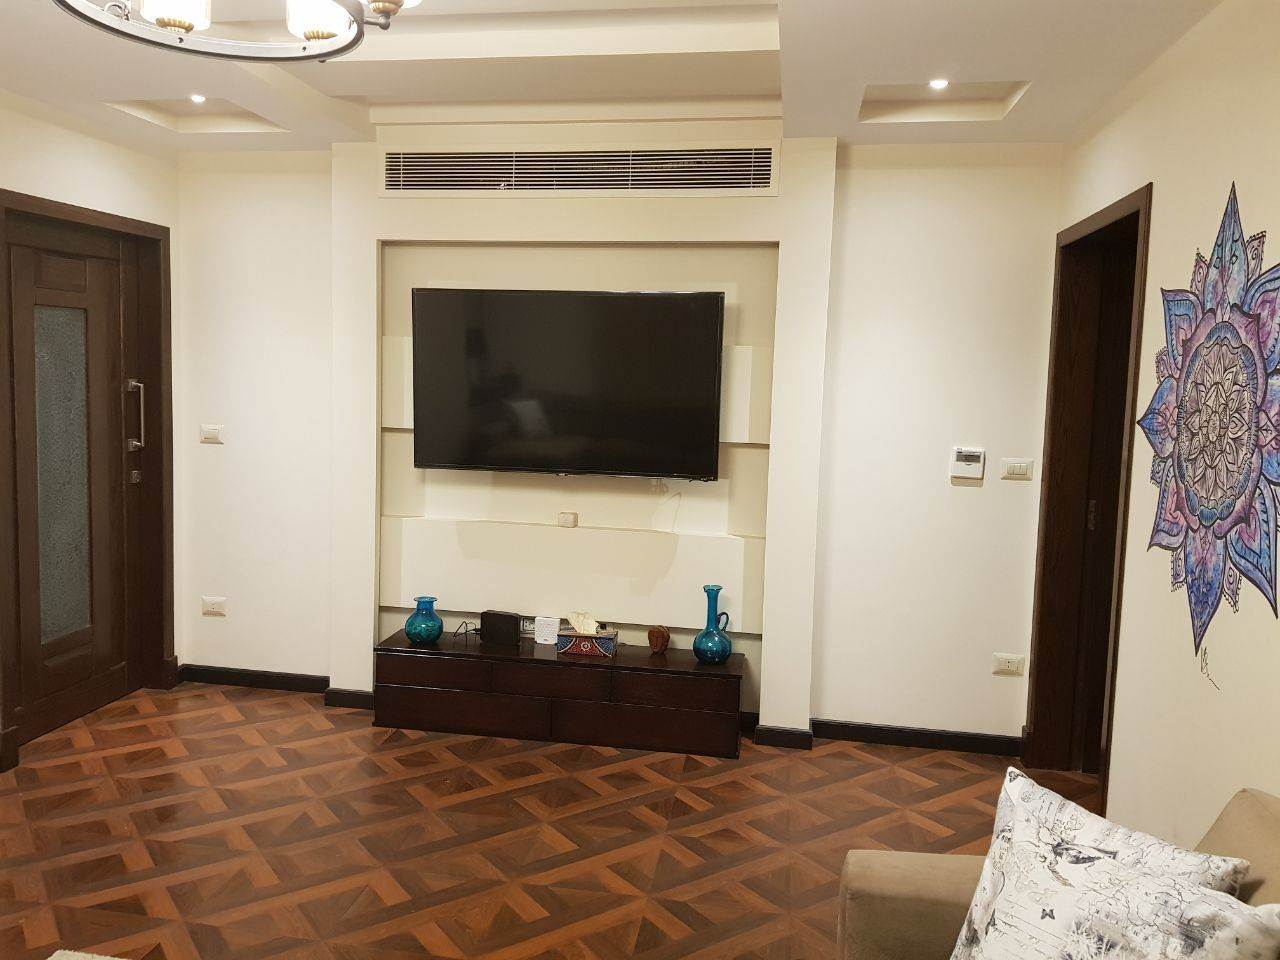 (شقة مصر الجديدة 003)  للبيع شقة فندقية 380 م بمسبح خاص بمصر الجديدة بمبني حديث بسعر حصري. 